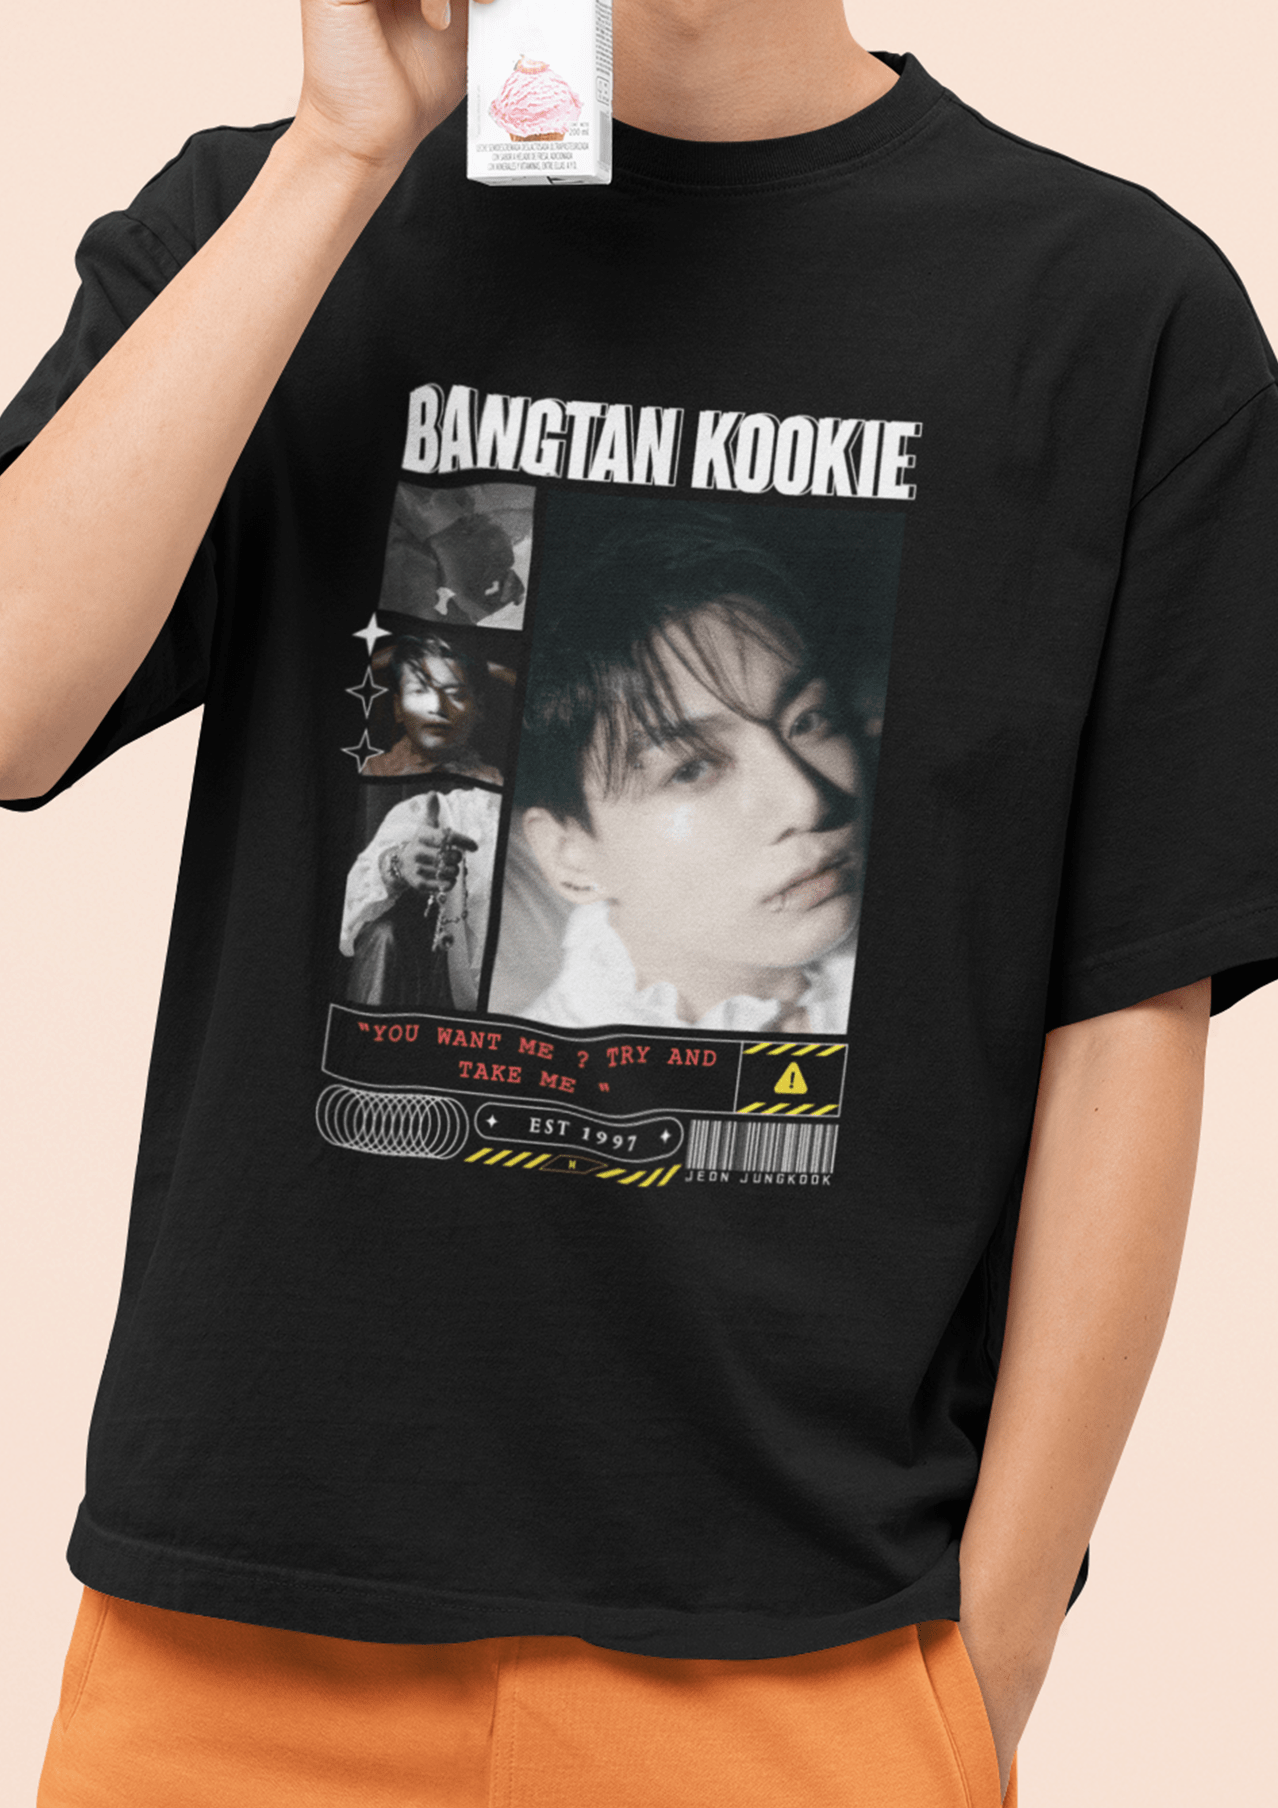 Bangtan Kookie Oversized Tshirt